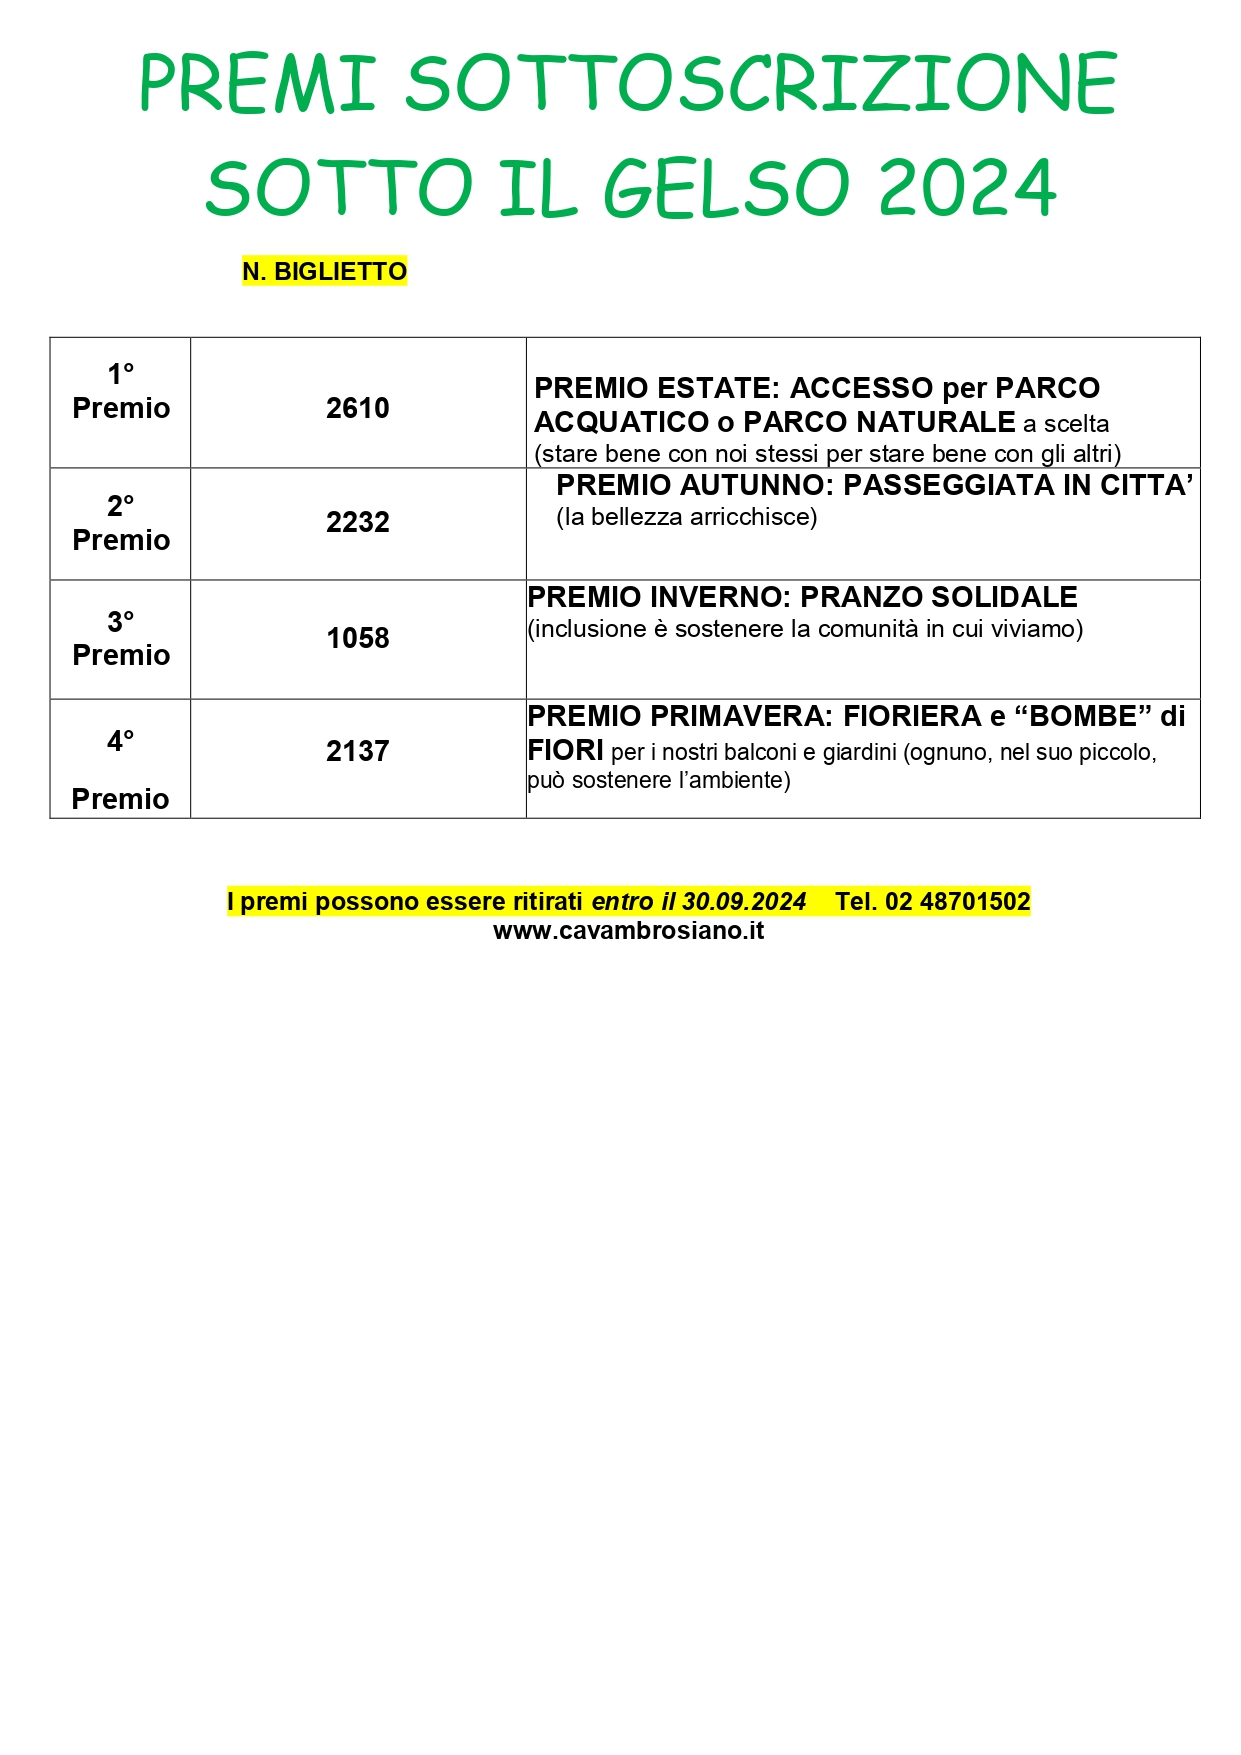 PREMI_SOTTOSCRIZIONE_SOTTO_IL_GELSO_2024_x_info_sito_page-0001.jpg